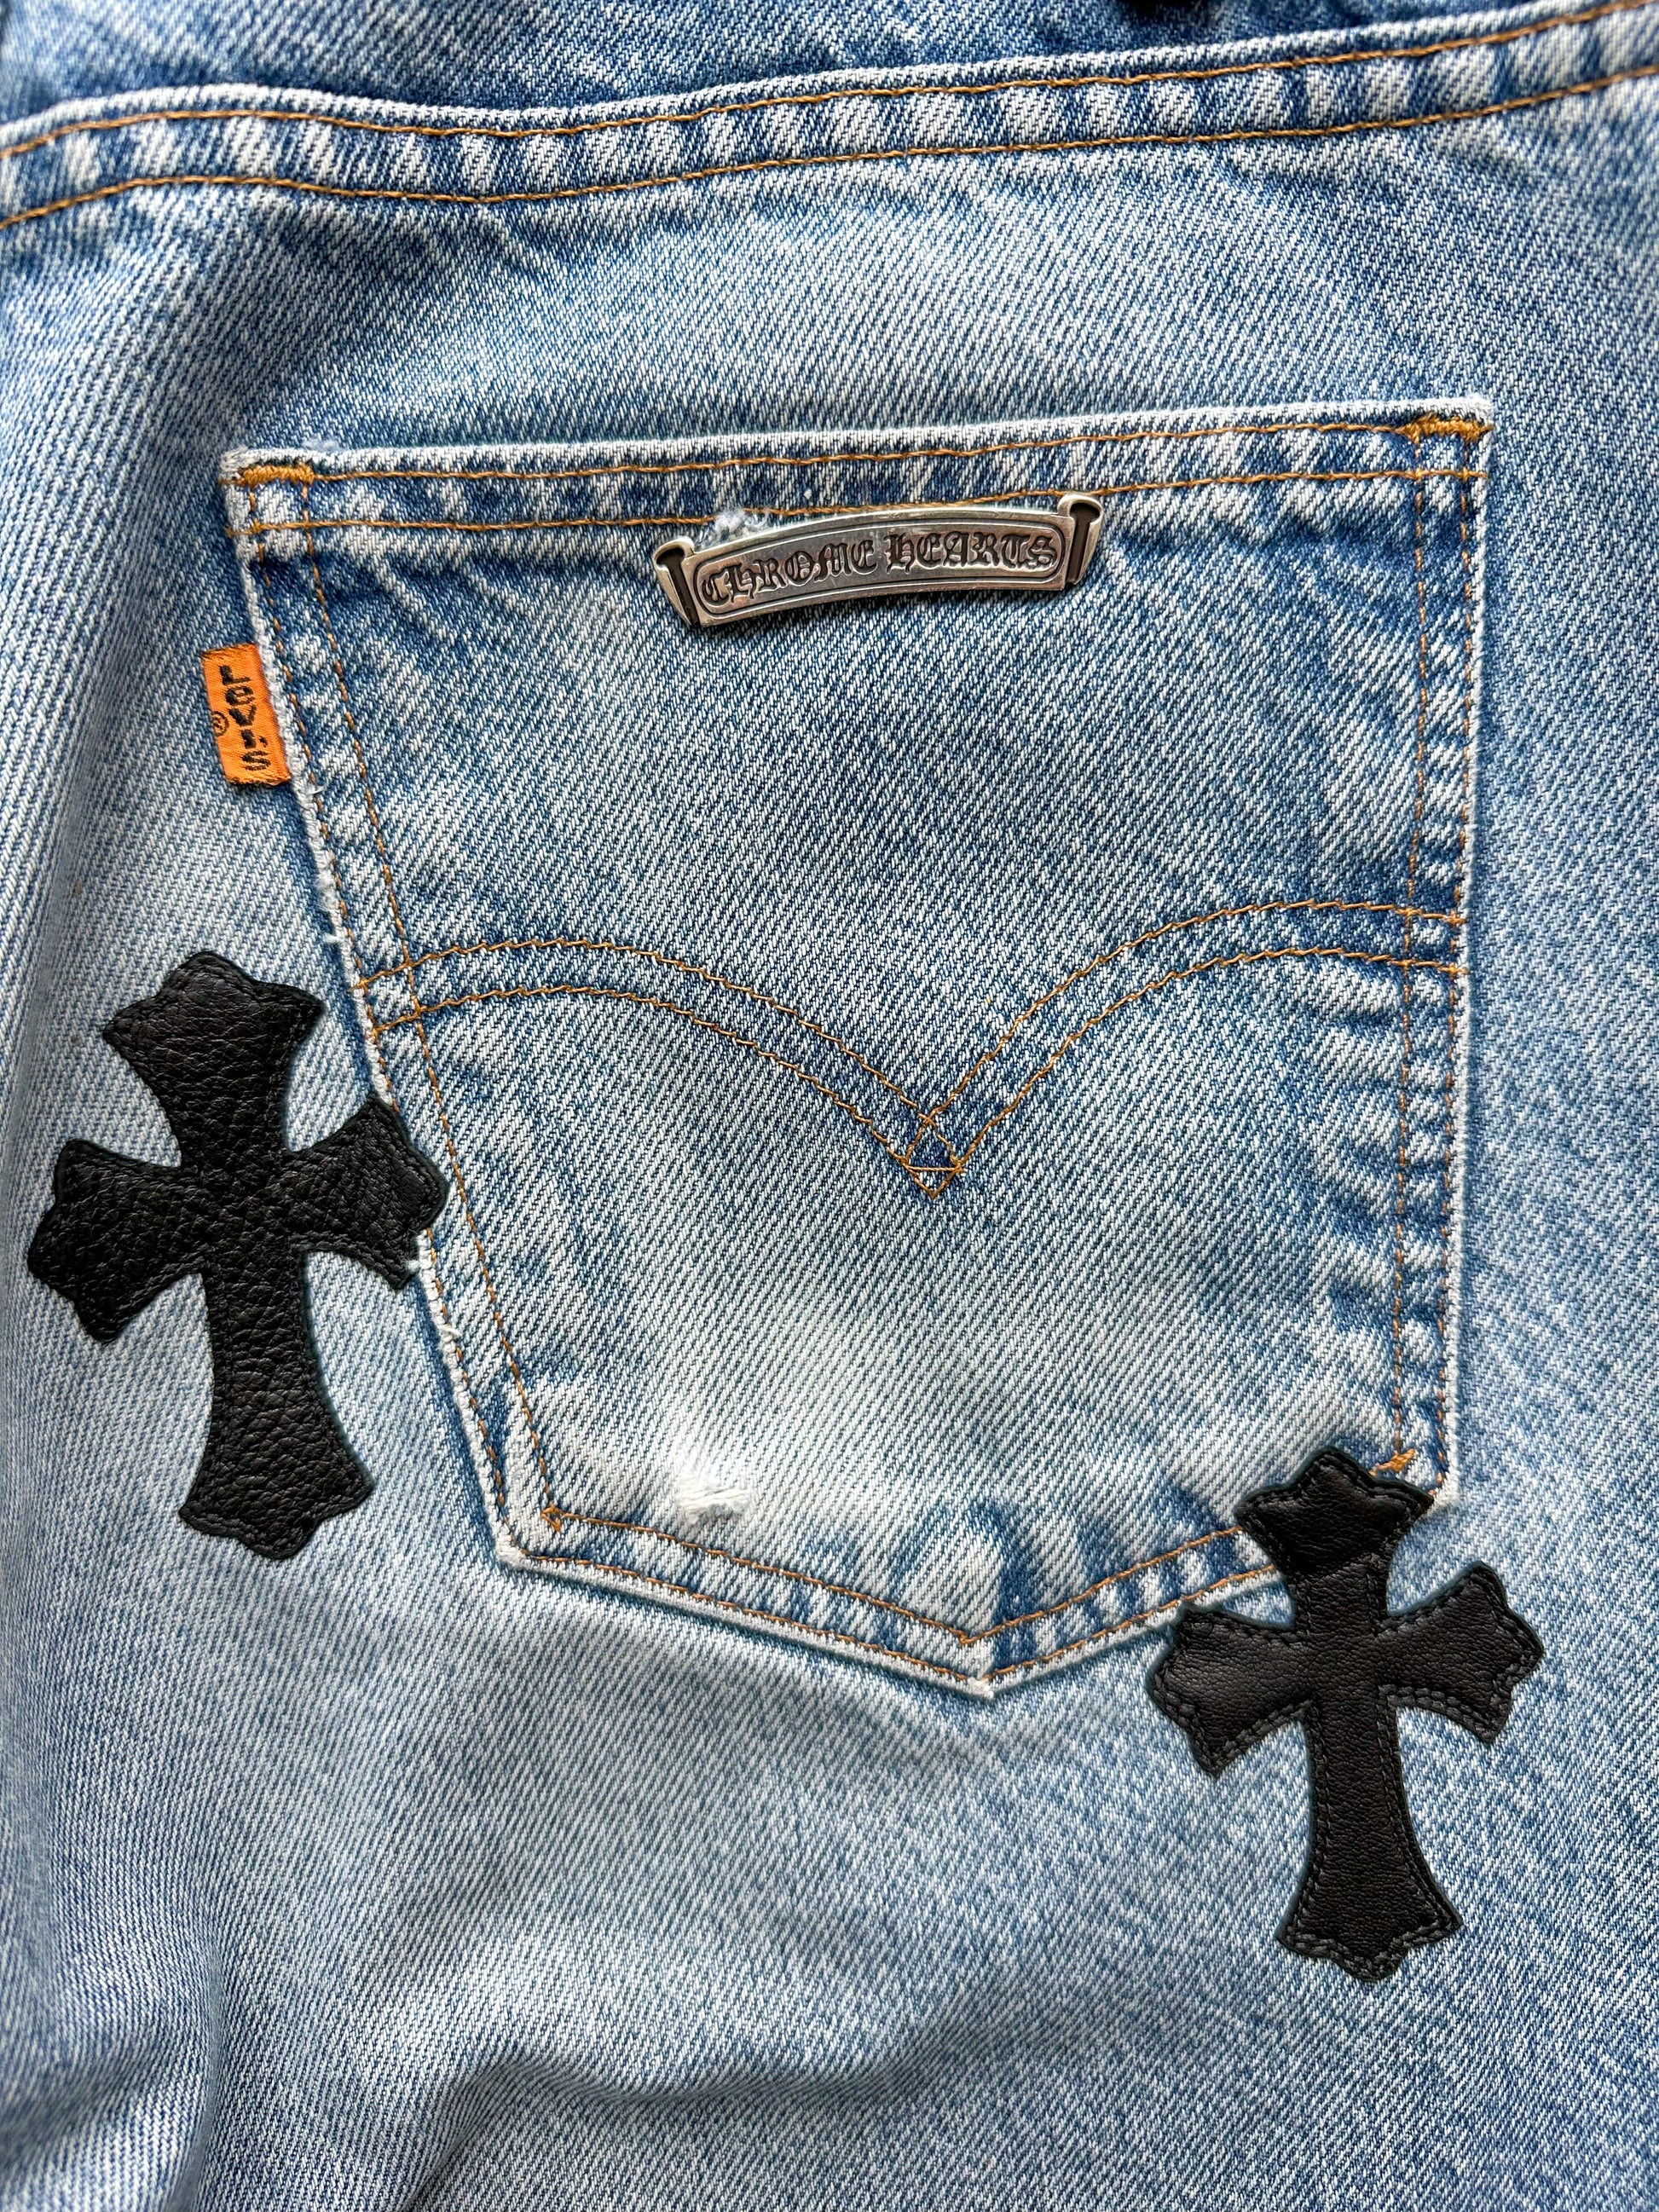 Chrome Hearts Jeans Levi's Black Cross Patch Denim